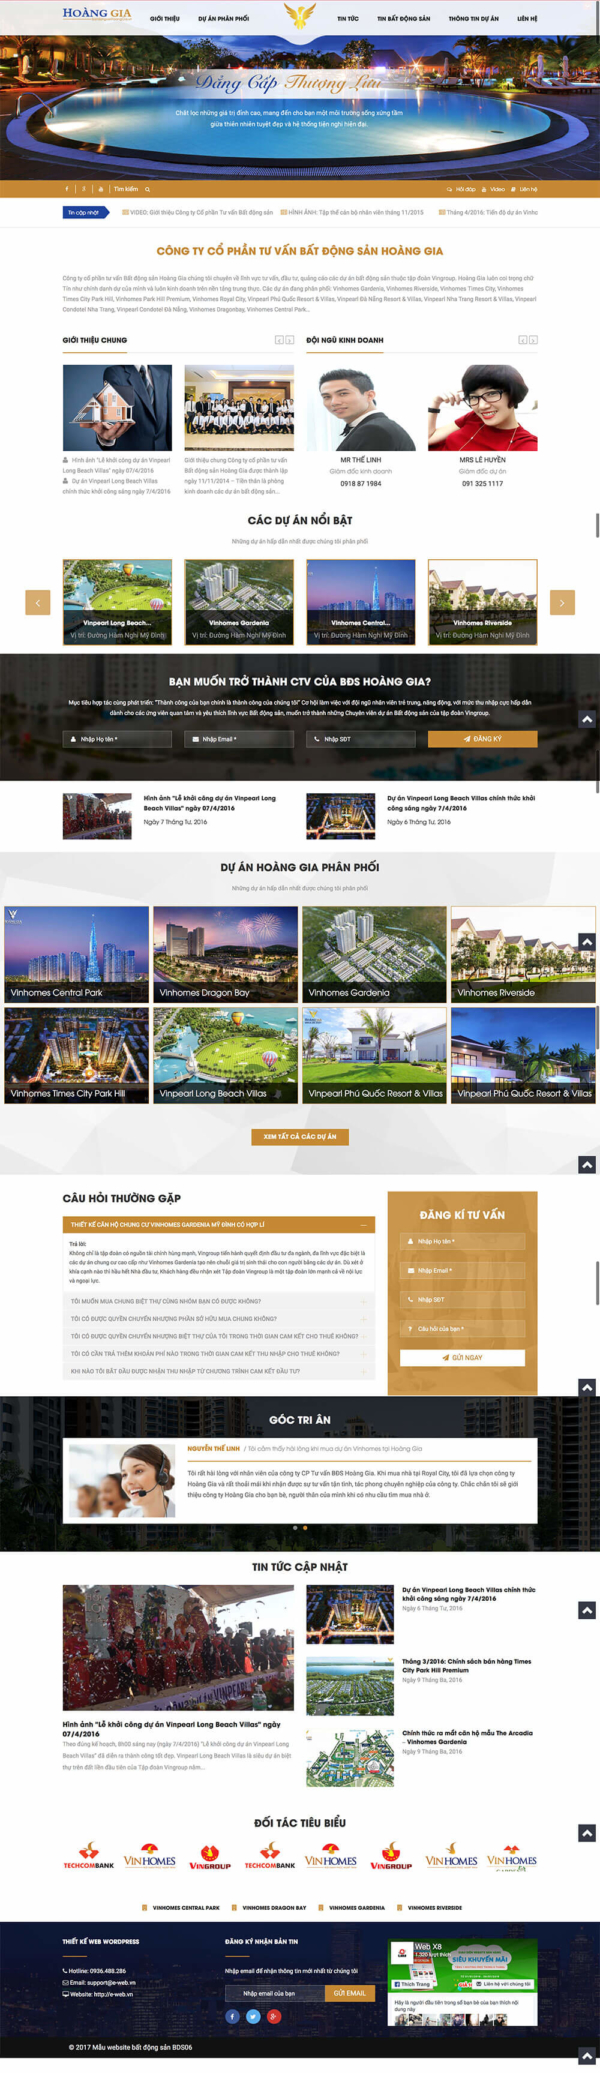 Mẫu thiết kế website bất động sản Hoàng Gia